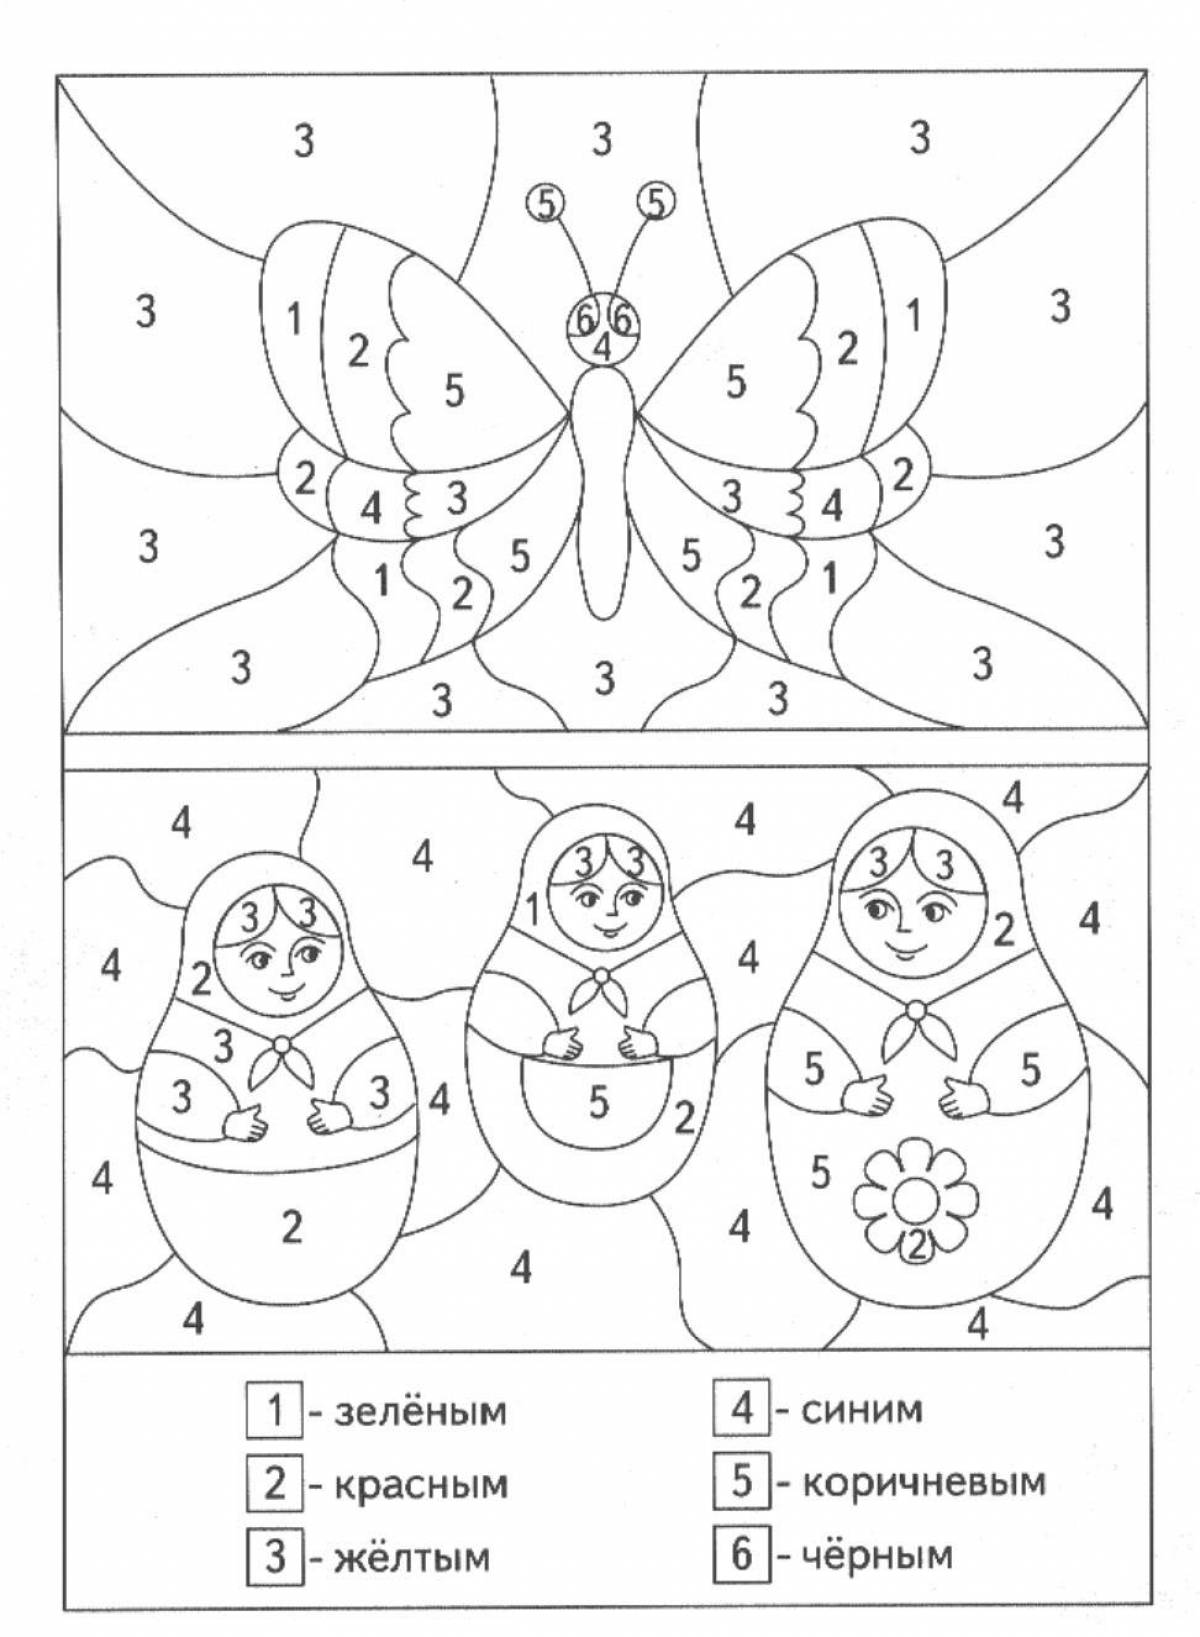 Радостная математическая раскраска для дошкольников 6-7 лет